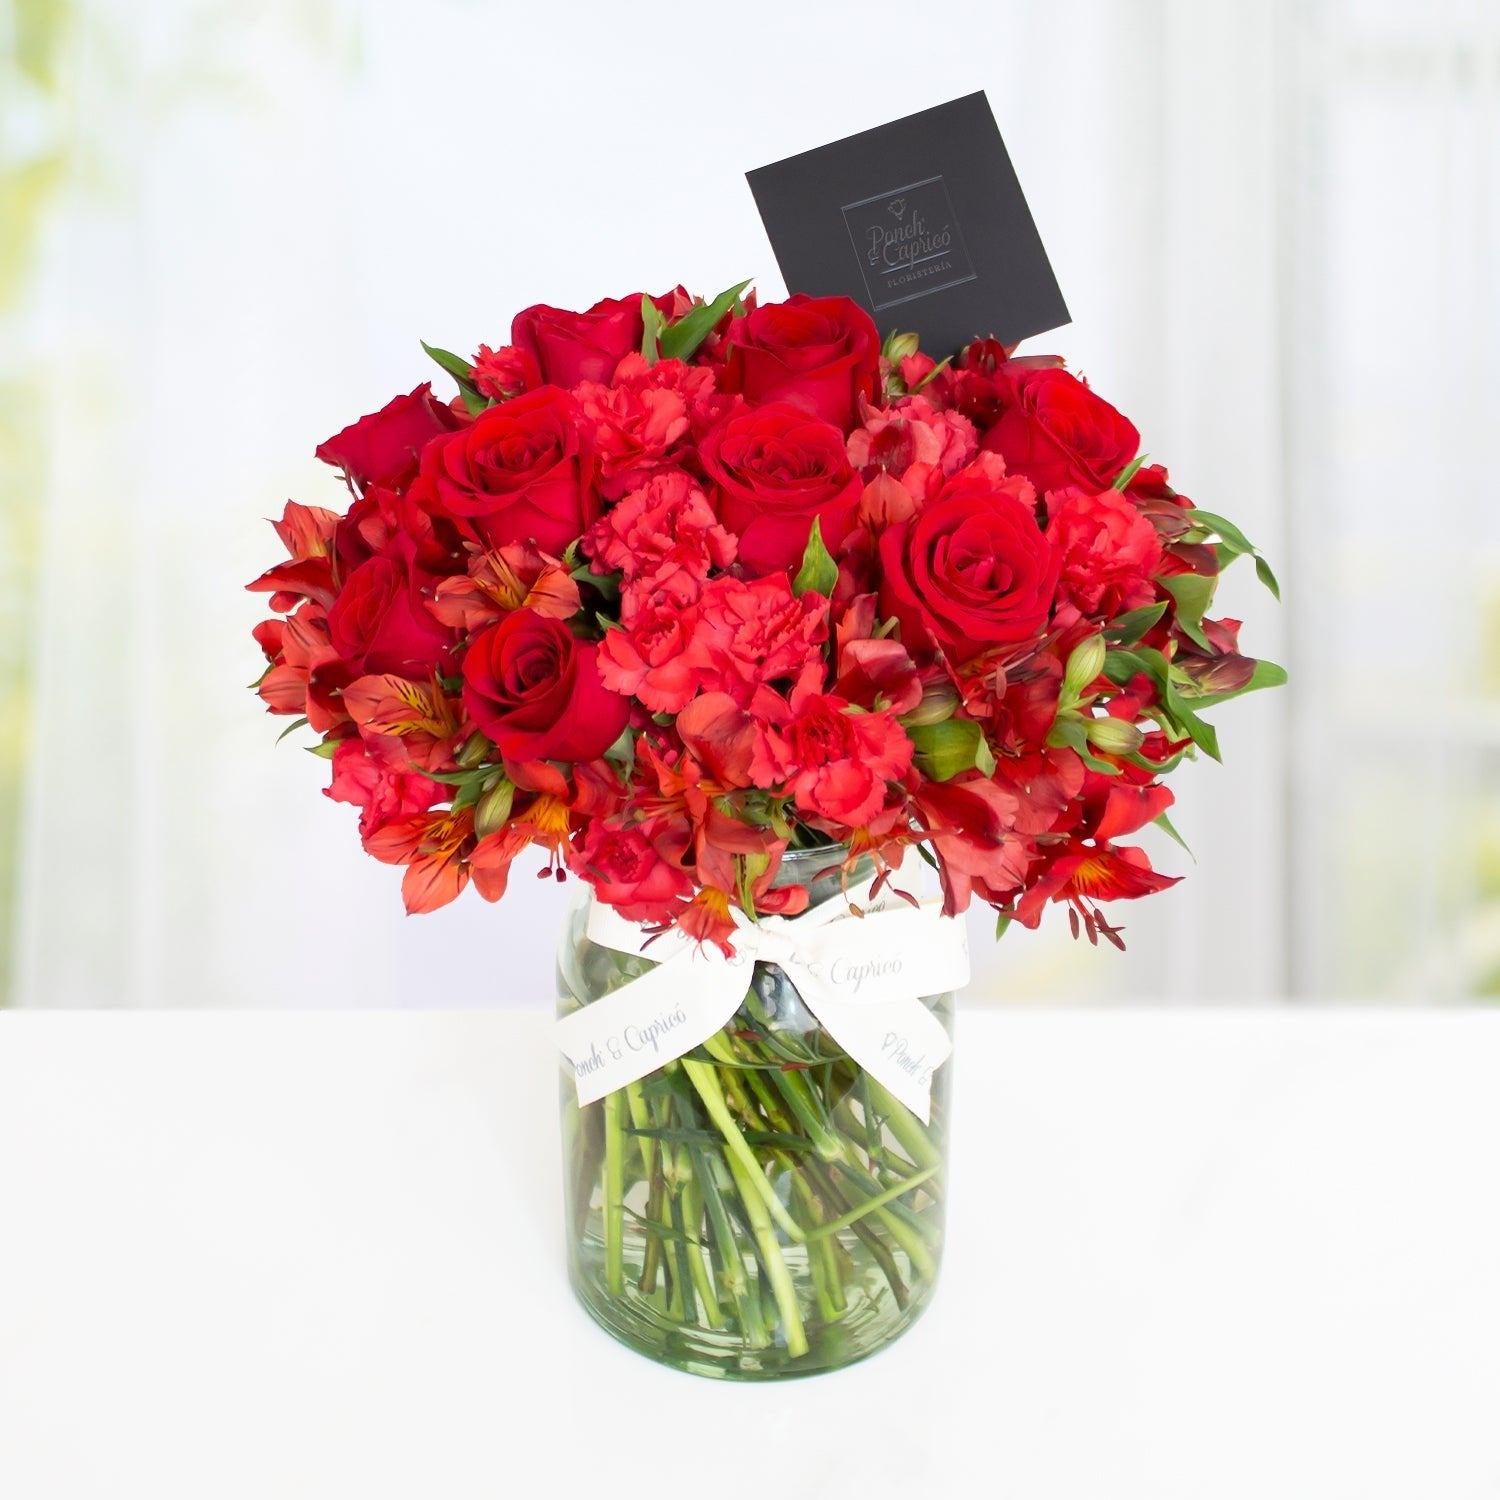 Arreglo floral con Rosas + Bouquet de Globos ¡It's your day! -SET023- | Globos y Regalos Teleglobos.com.mx.